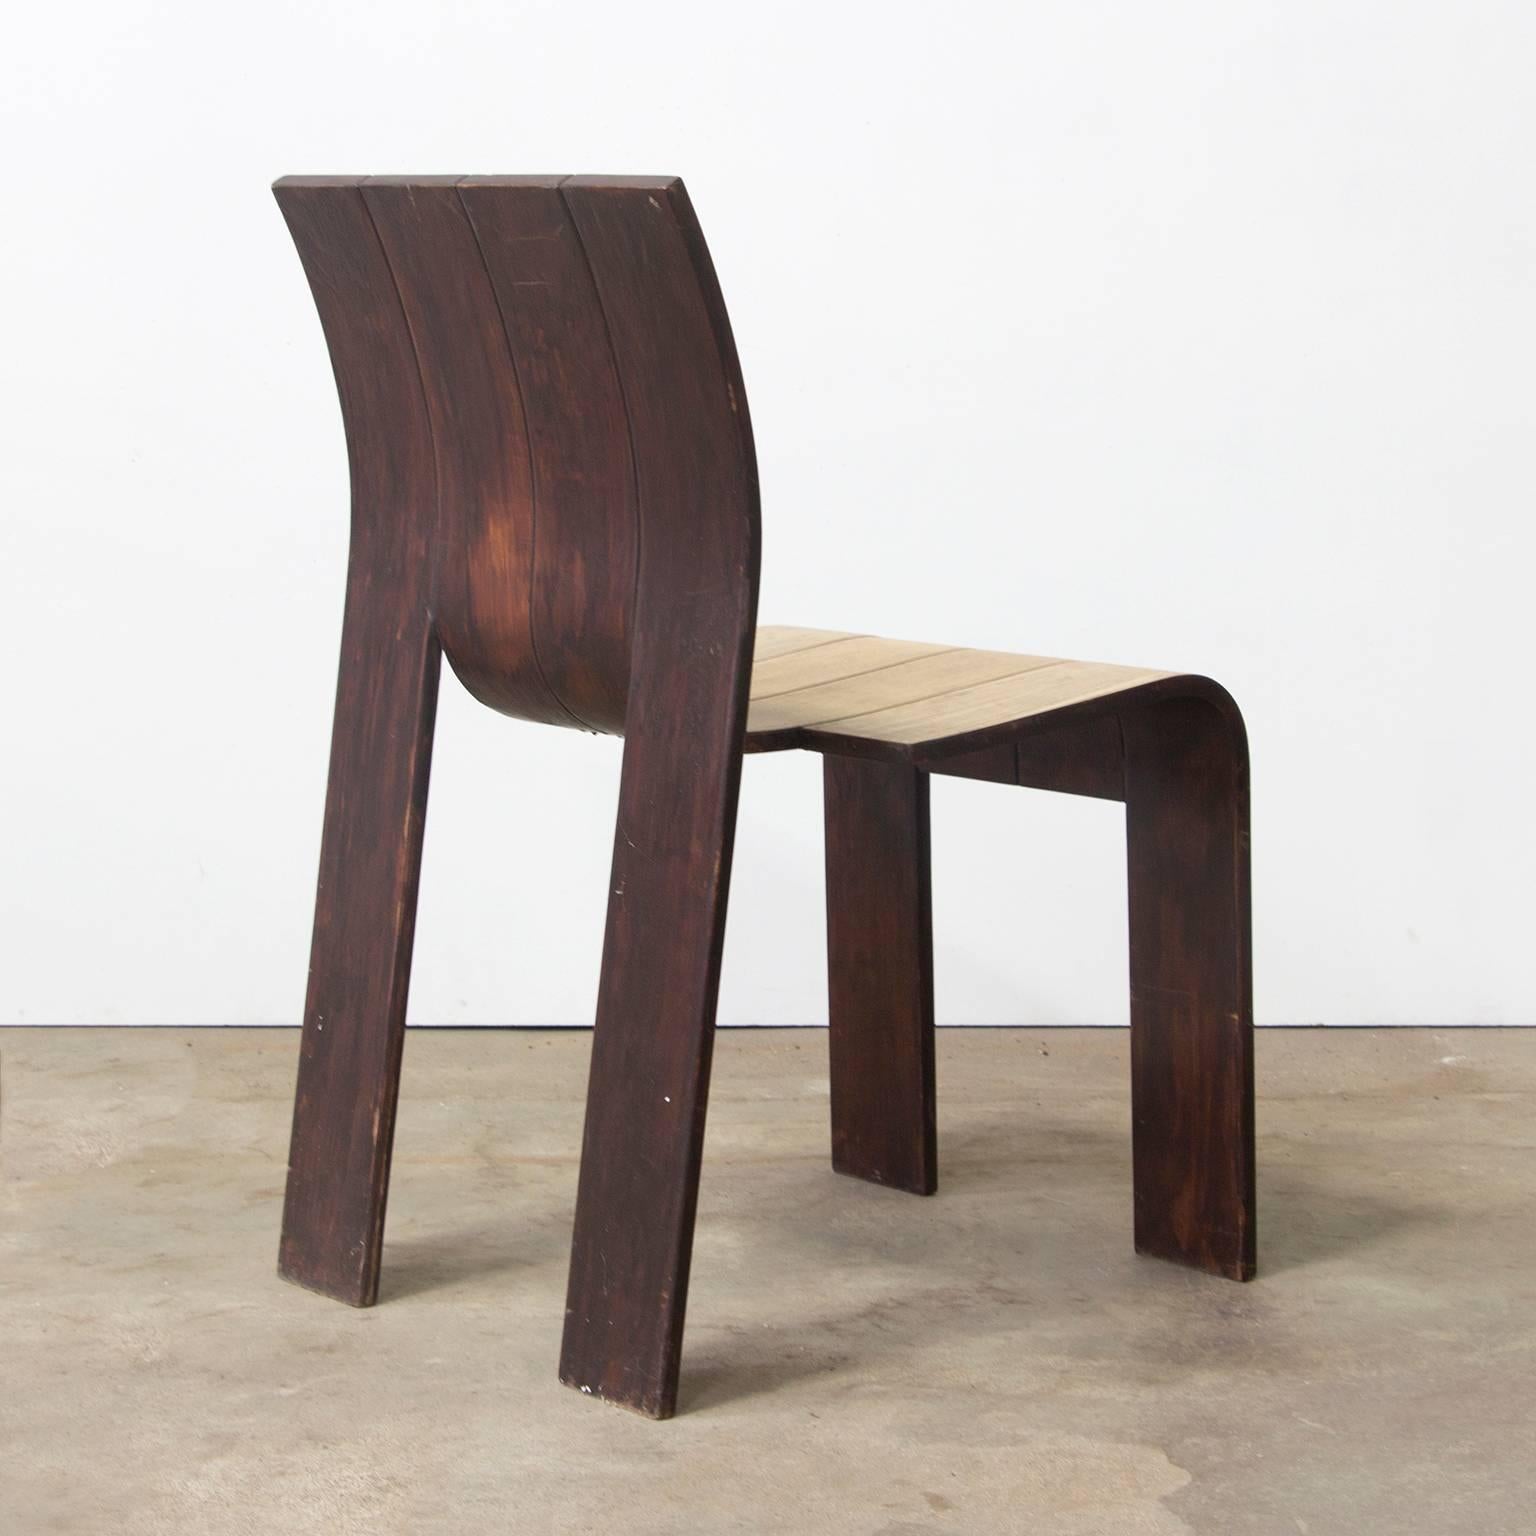 1974, Gijs Bakker, Castelijn, teilweise lackierter stapelbarer Stuhl mit gebogenen Holzstreifen, 1974 (Moderne der Mitte des Jahrhunderts)